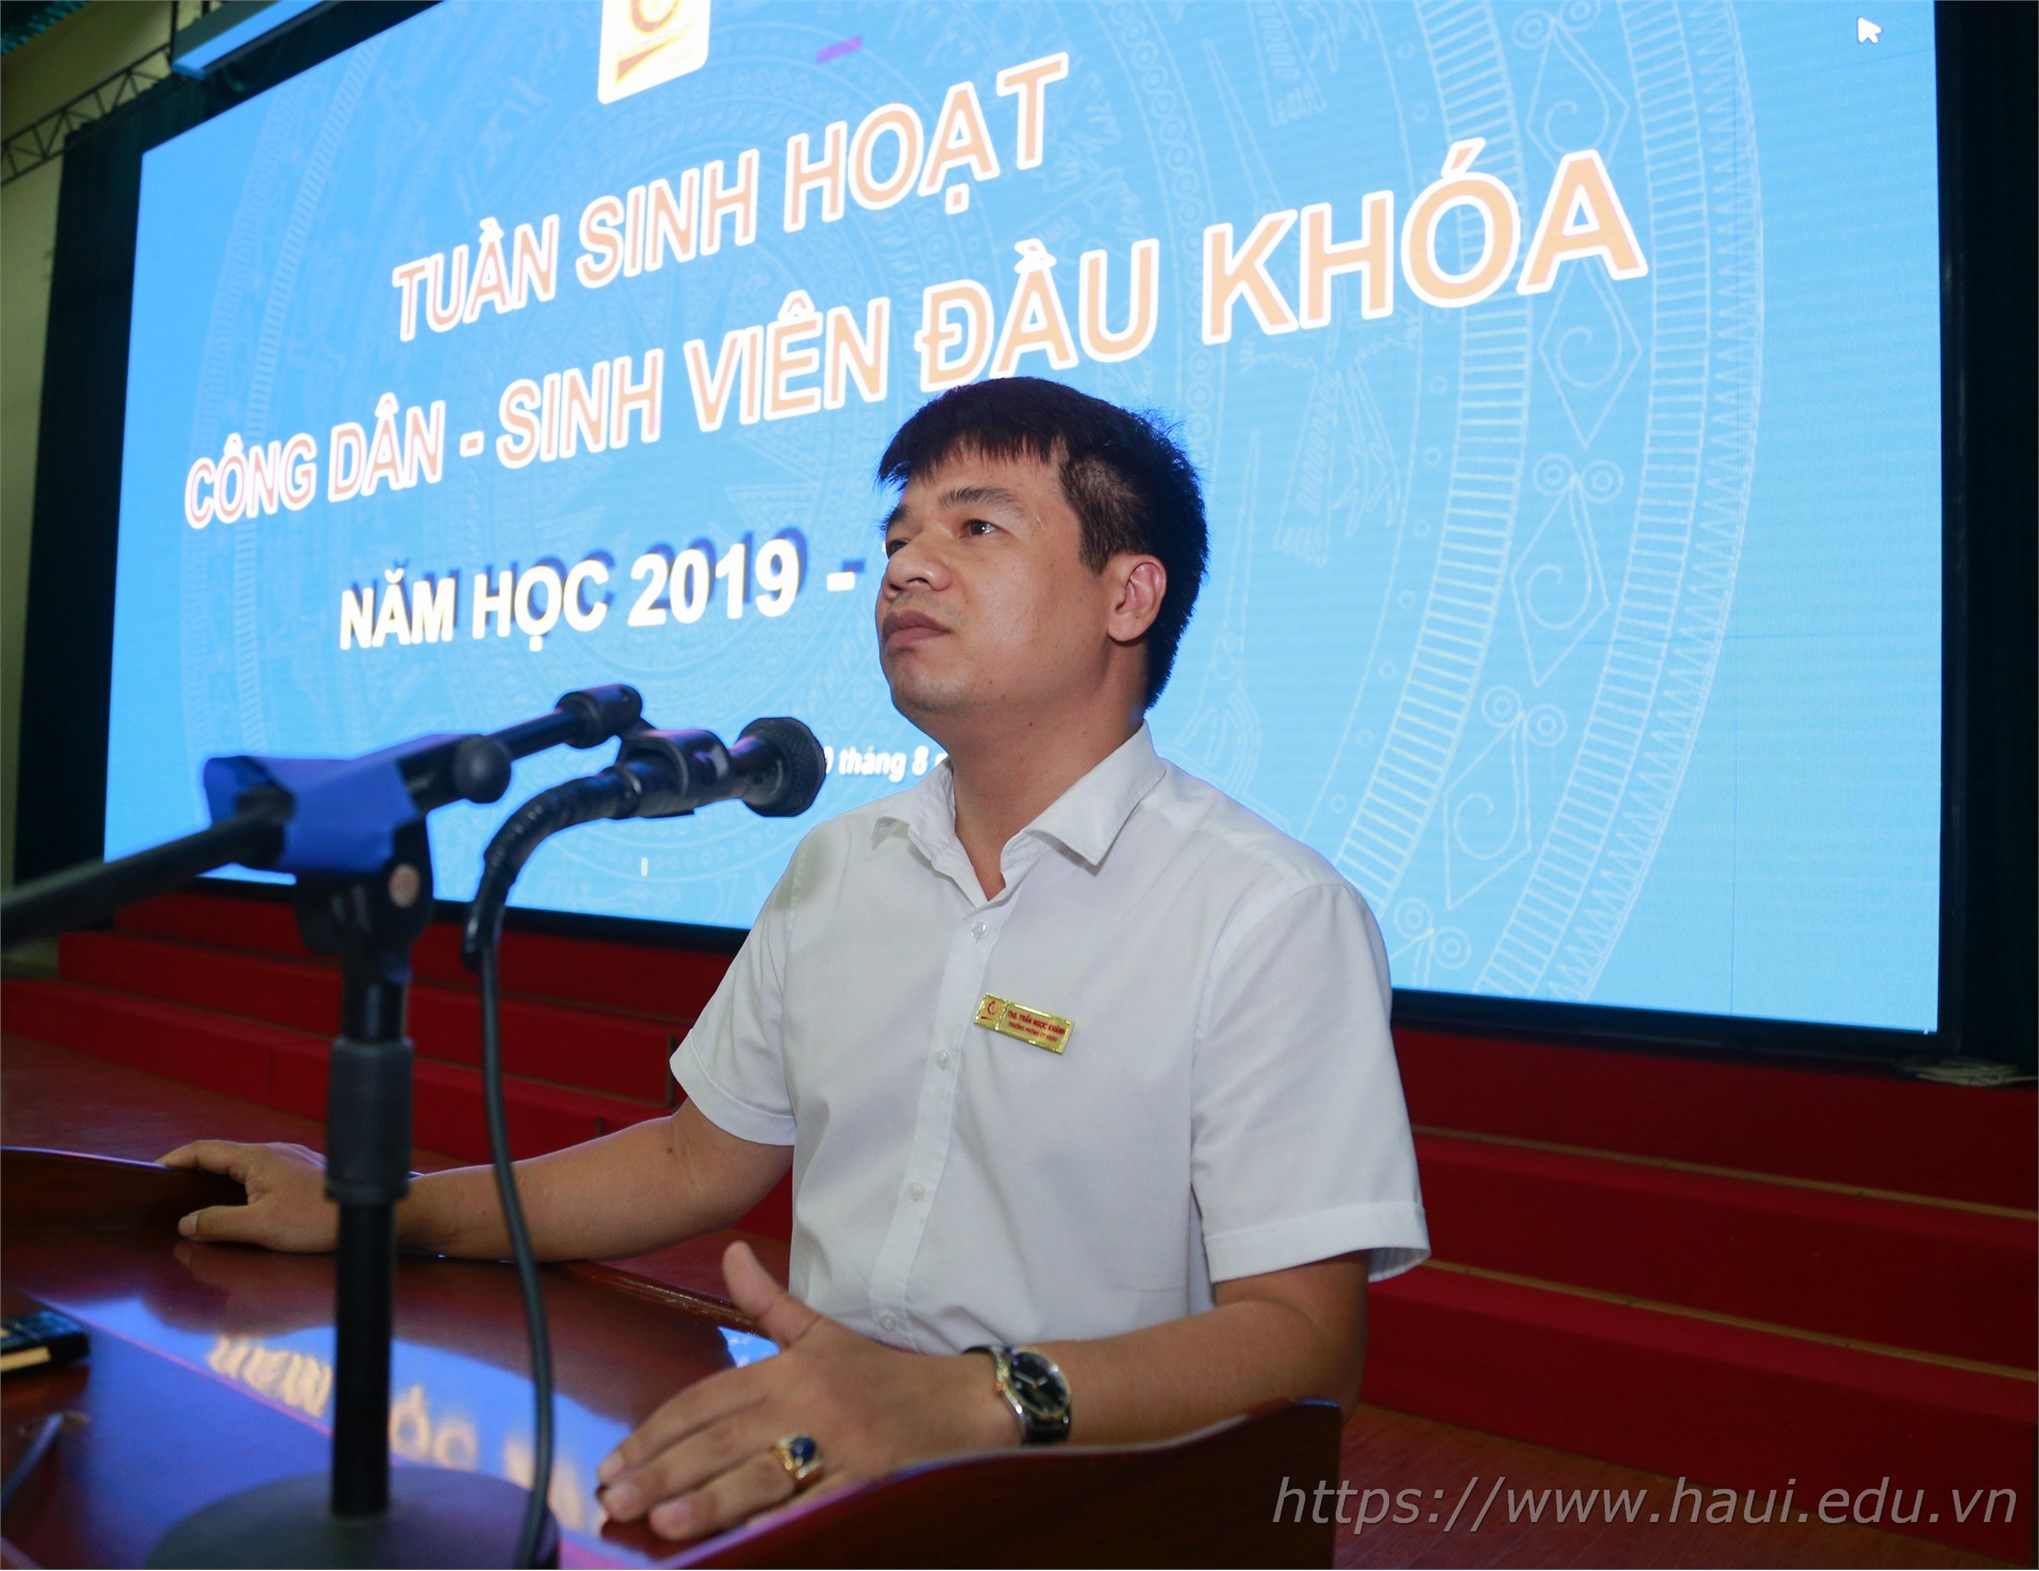 Tuần sinh hoạt công dân Đại học Công nghiệp Hà Nội